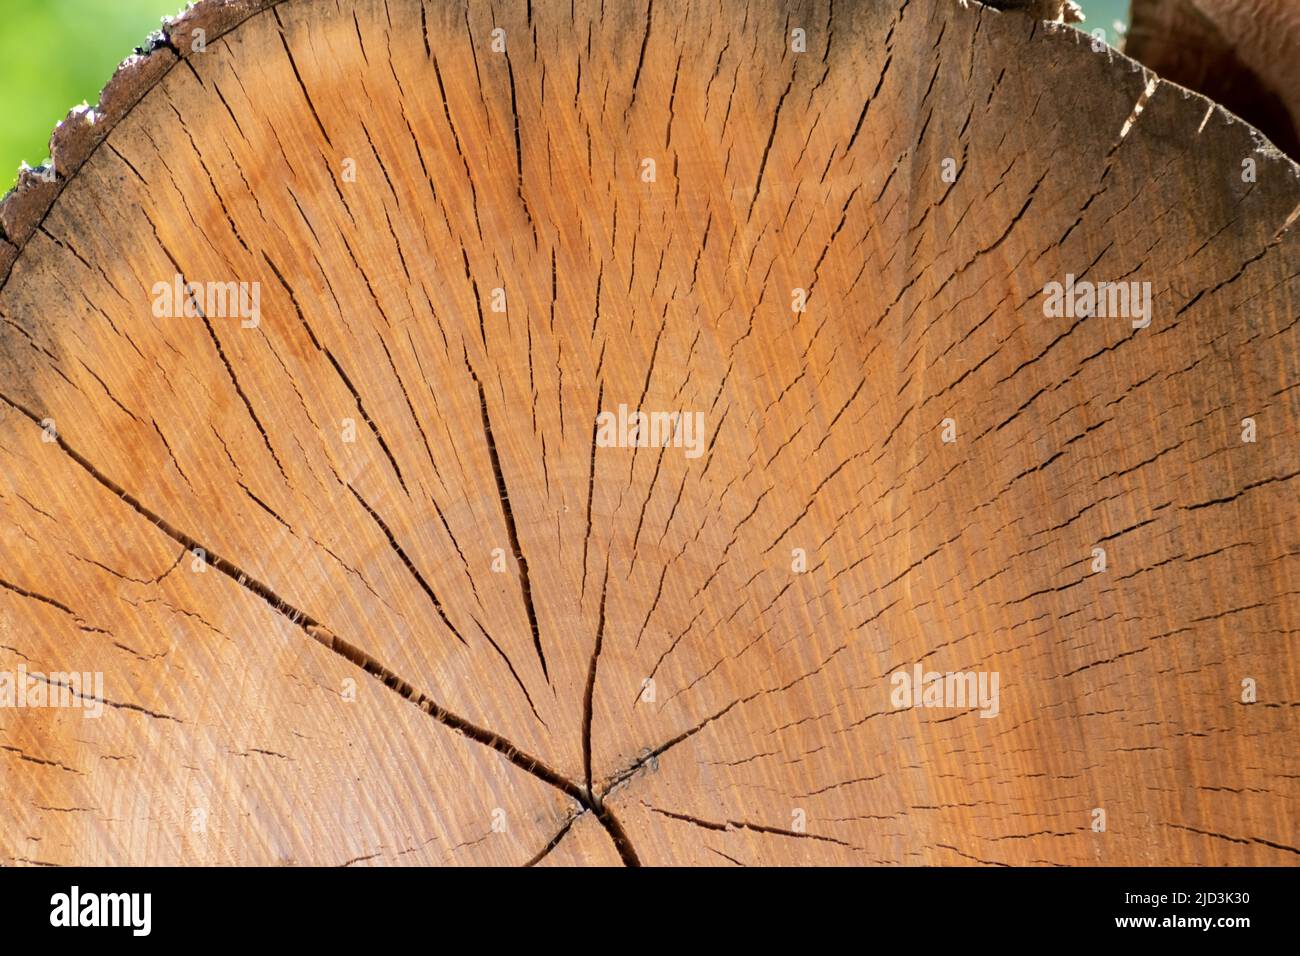 Nach der Entwaldung, die als Holzstapel gestapelt wurde, wurde die Baumscheibe aus Bauholz geschnitten, die Jahresringe und das Alter der Bäume für die Holz- und Holzindustrie zeigt Stockfoto